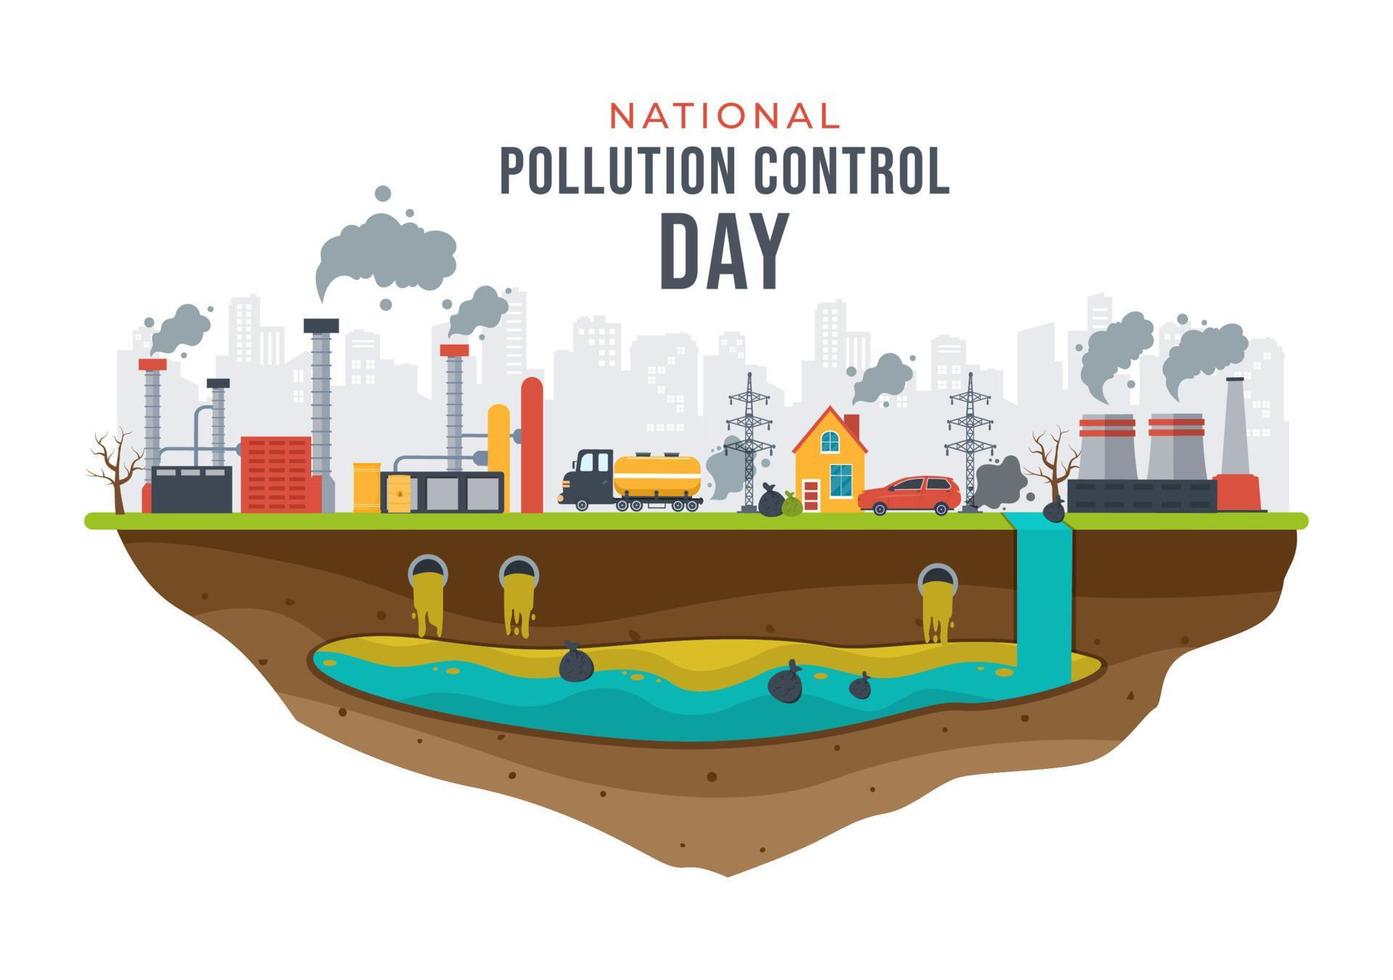 journée nationale de prévention de la pollution pour la campagne de sensibilisation sur les problèmes d'usine, de forêt ou de véhicule dans le modèle illustration plate de dessin animé dessiné à la main vecteur